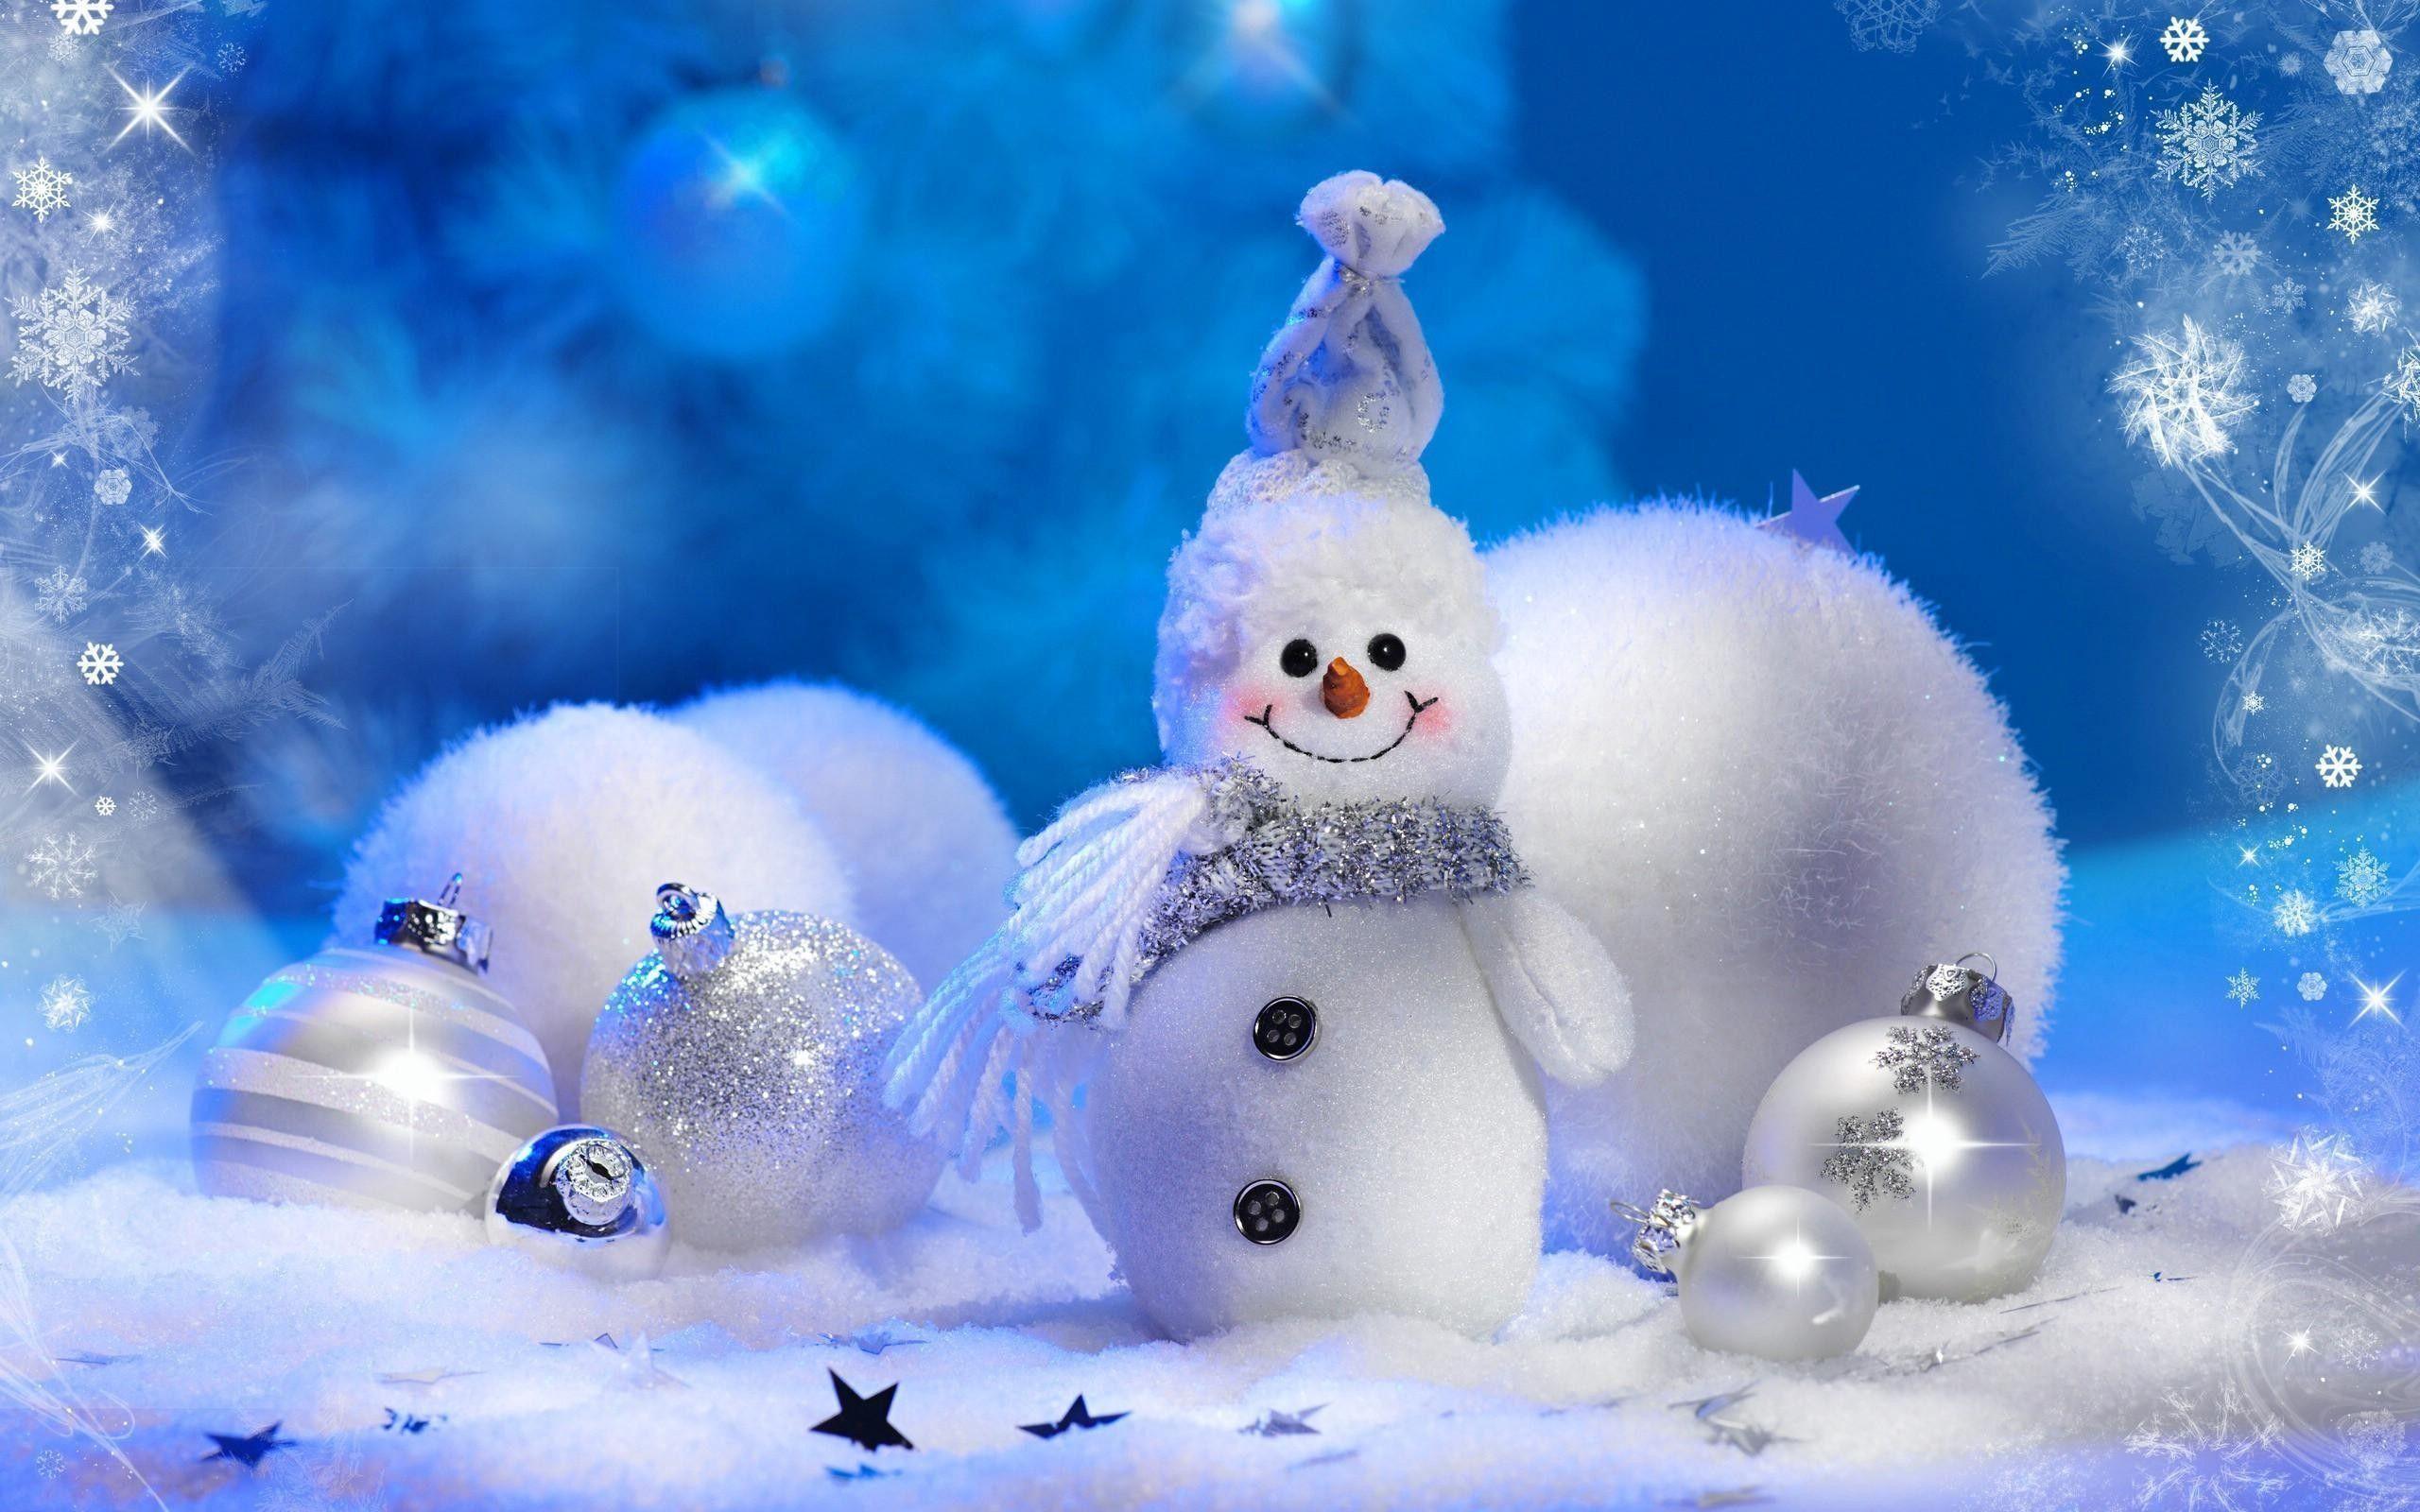 Christmas Winter Scenes Wallpaper 19 HD Widescreen 2560x1600 Pixel